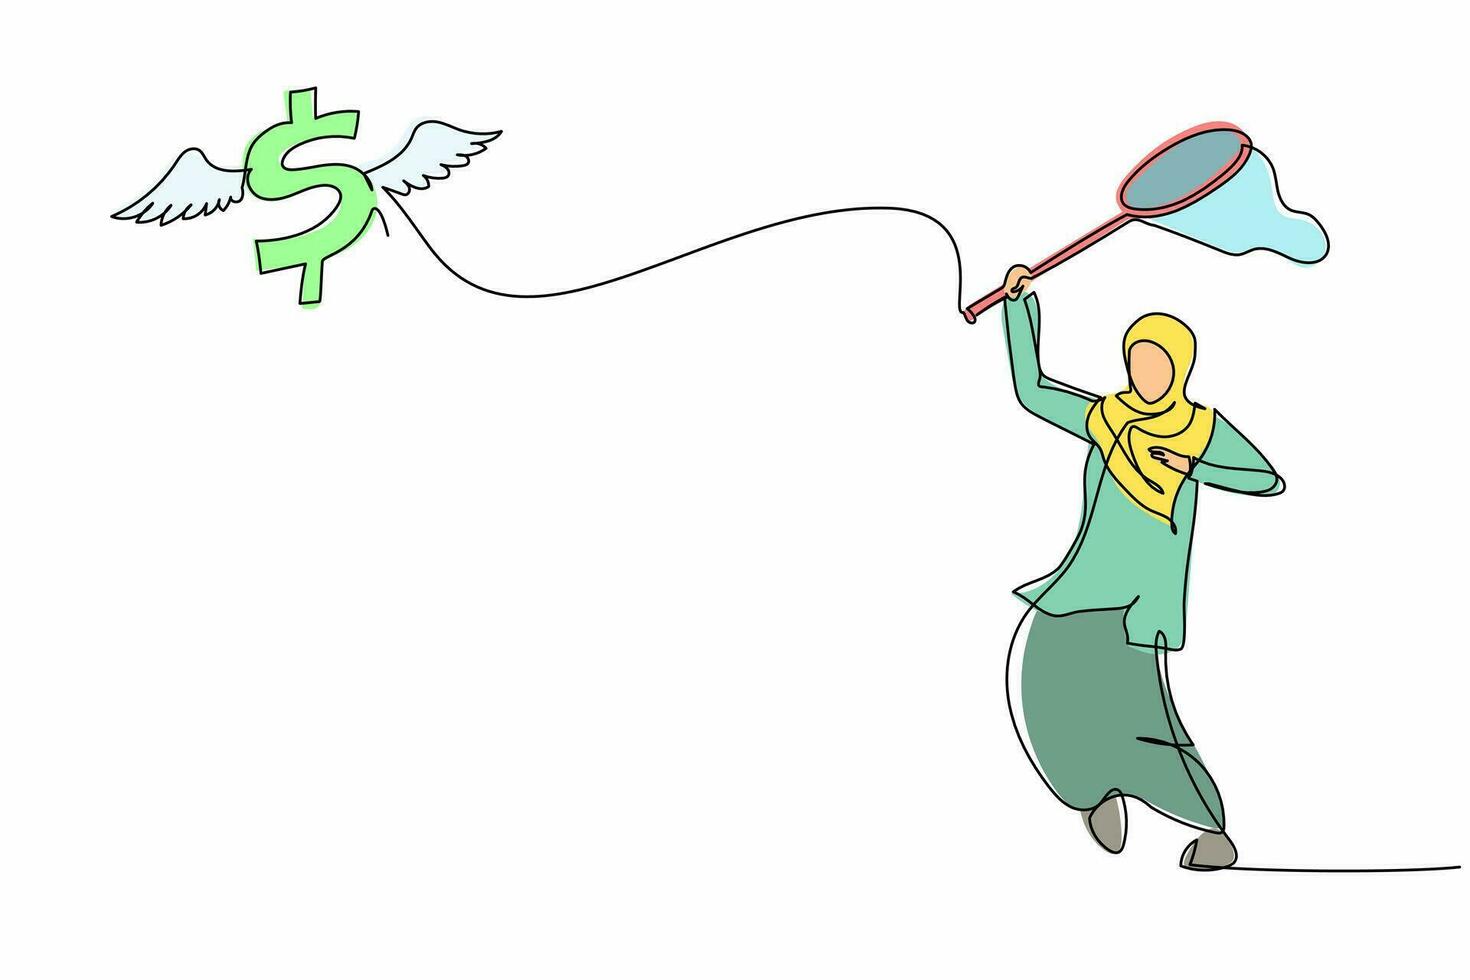 una sola línea continua dibujando una mujer de negocios árabe intenta atrapar el símbolo del dólar volador con una red de mariposas. la inflación del dólar hace que los precios suban. ilustración de vector de diseño gráfico de dibujo de una línea